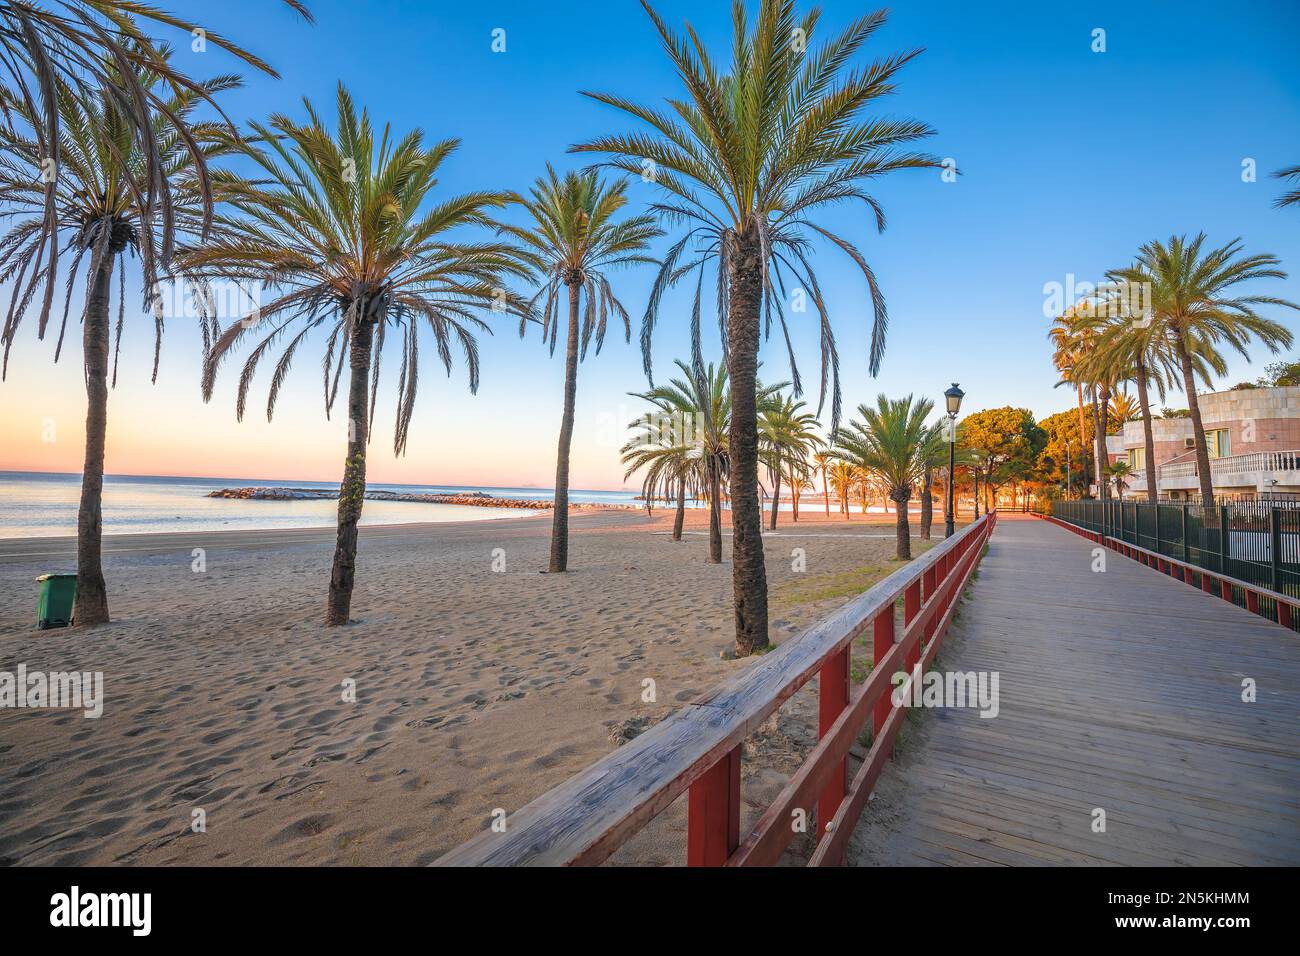 Puerto Banus vicino a Marbella spiaggia di sabbia, Andalusia regione della Spagna Foto Stock